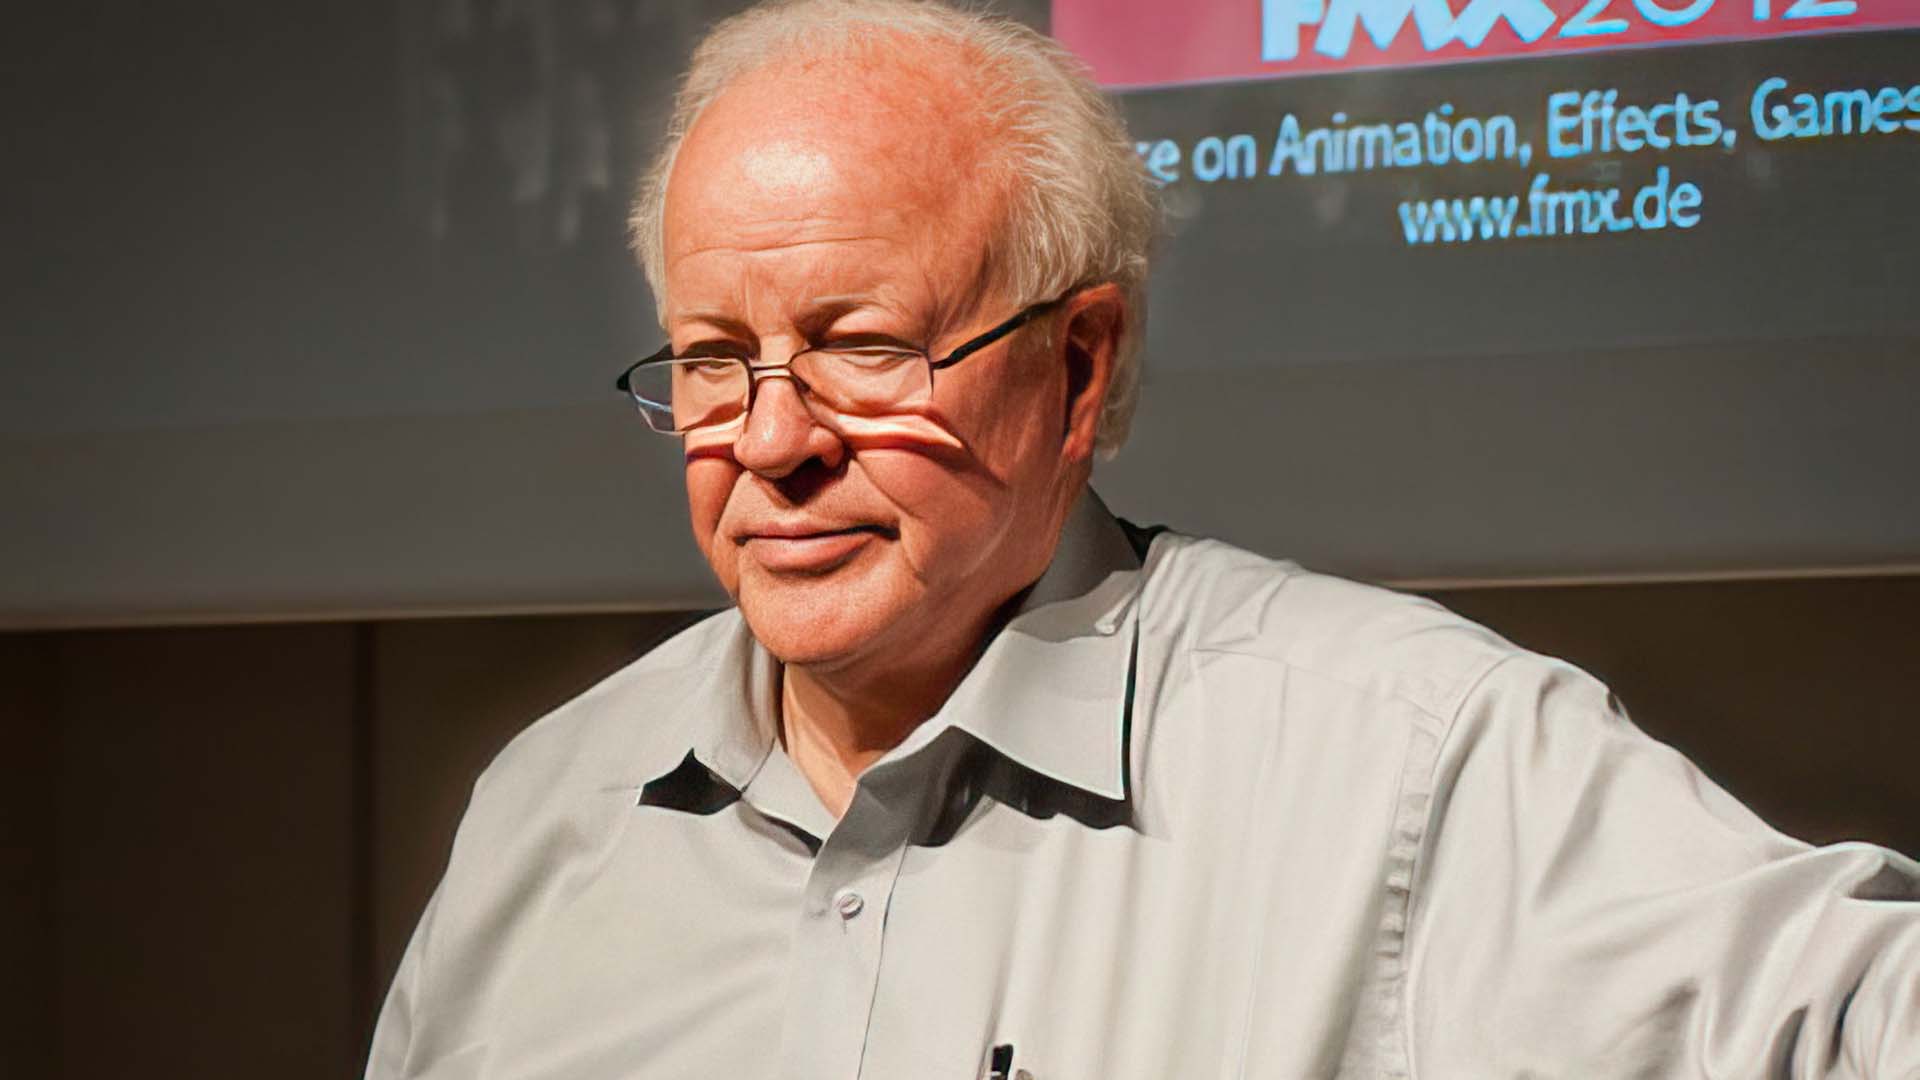 Douglas Trumbull at FMX in 2012. Image: Haus der Wirtschaft.